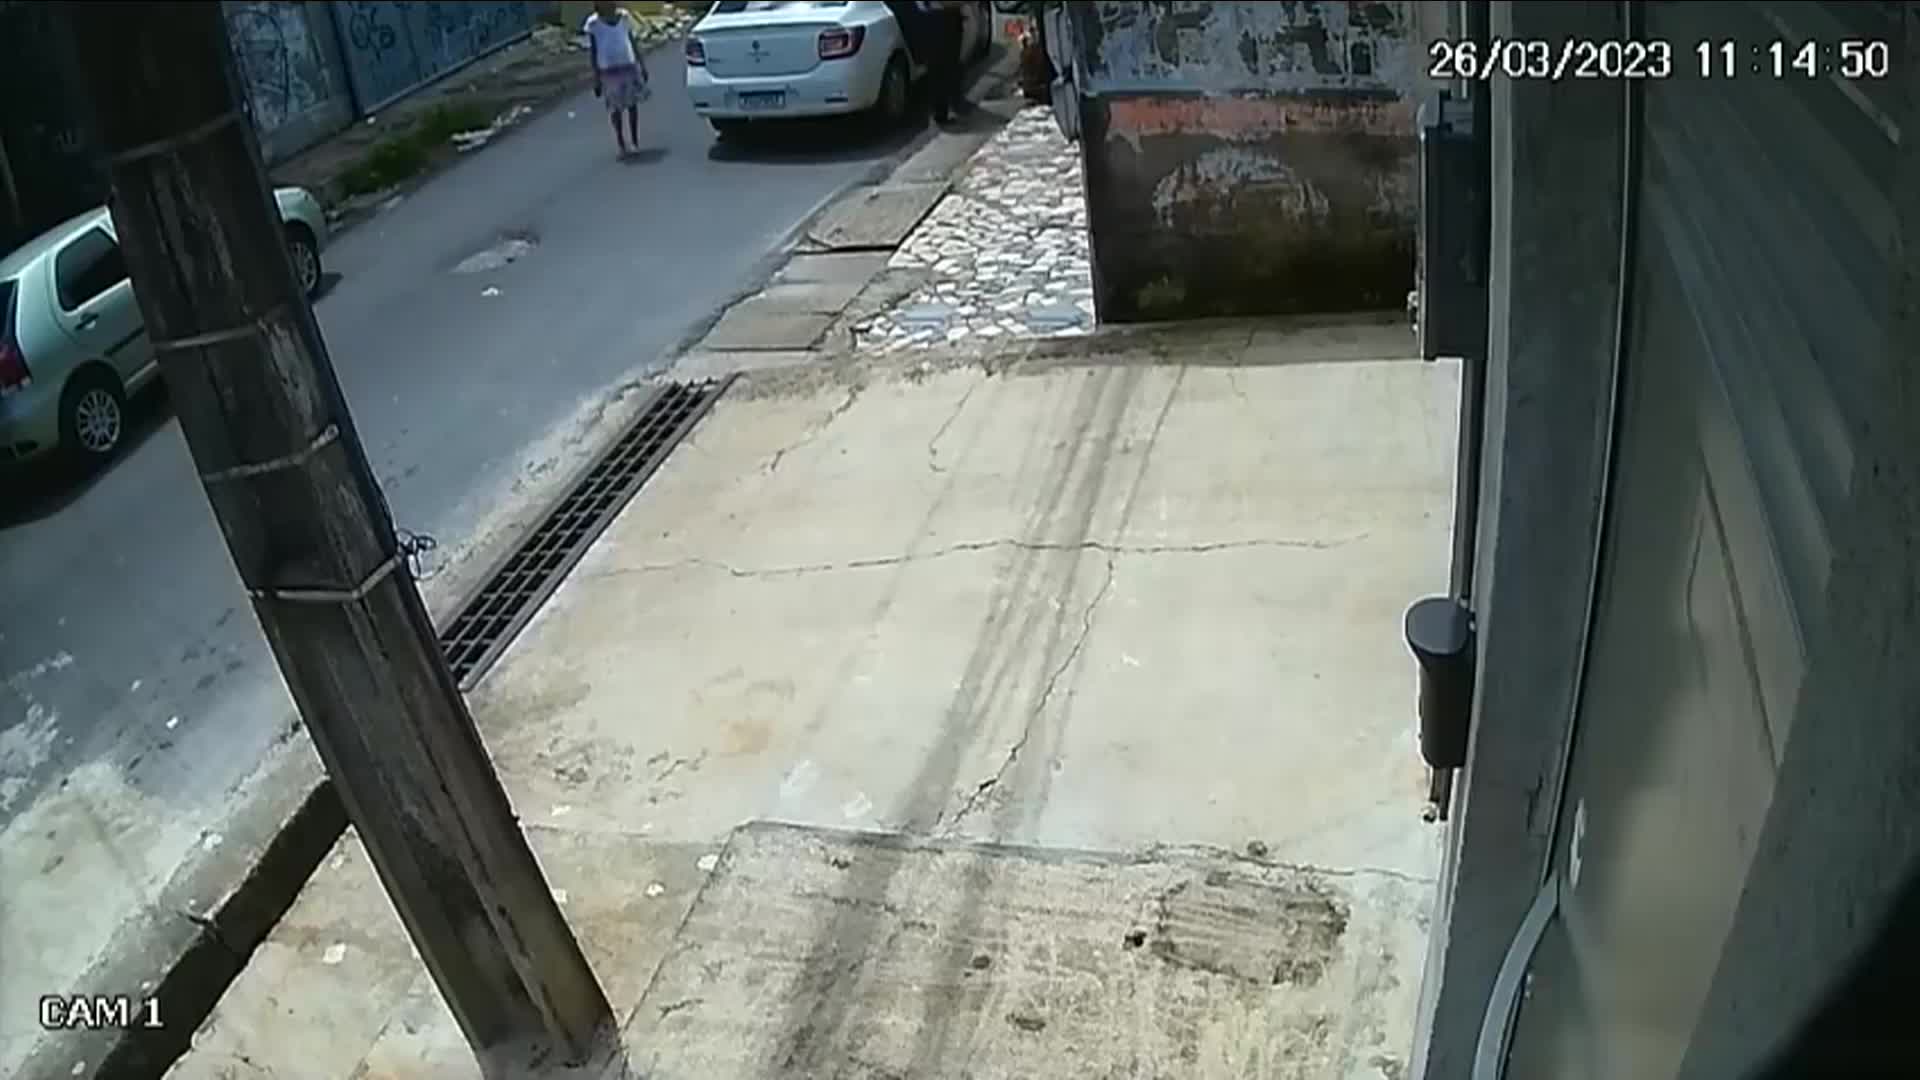 Vídeo: Vídeo flagra motorista atropelando idosa de 102 anos em Belém (PA)